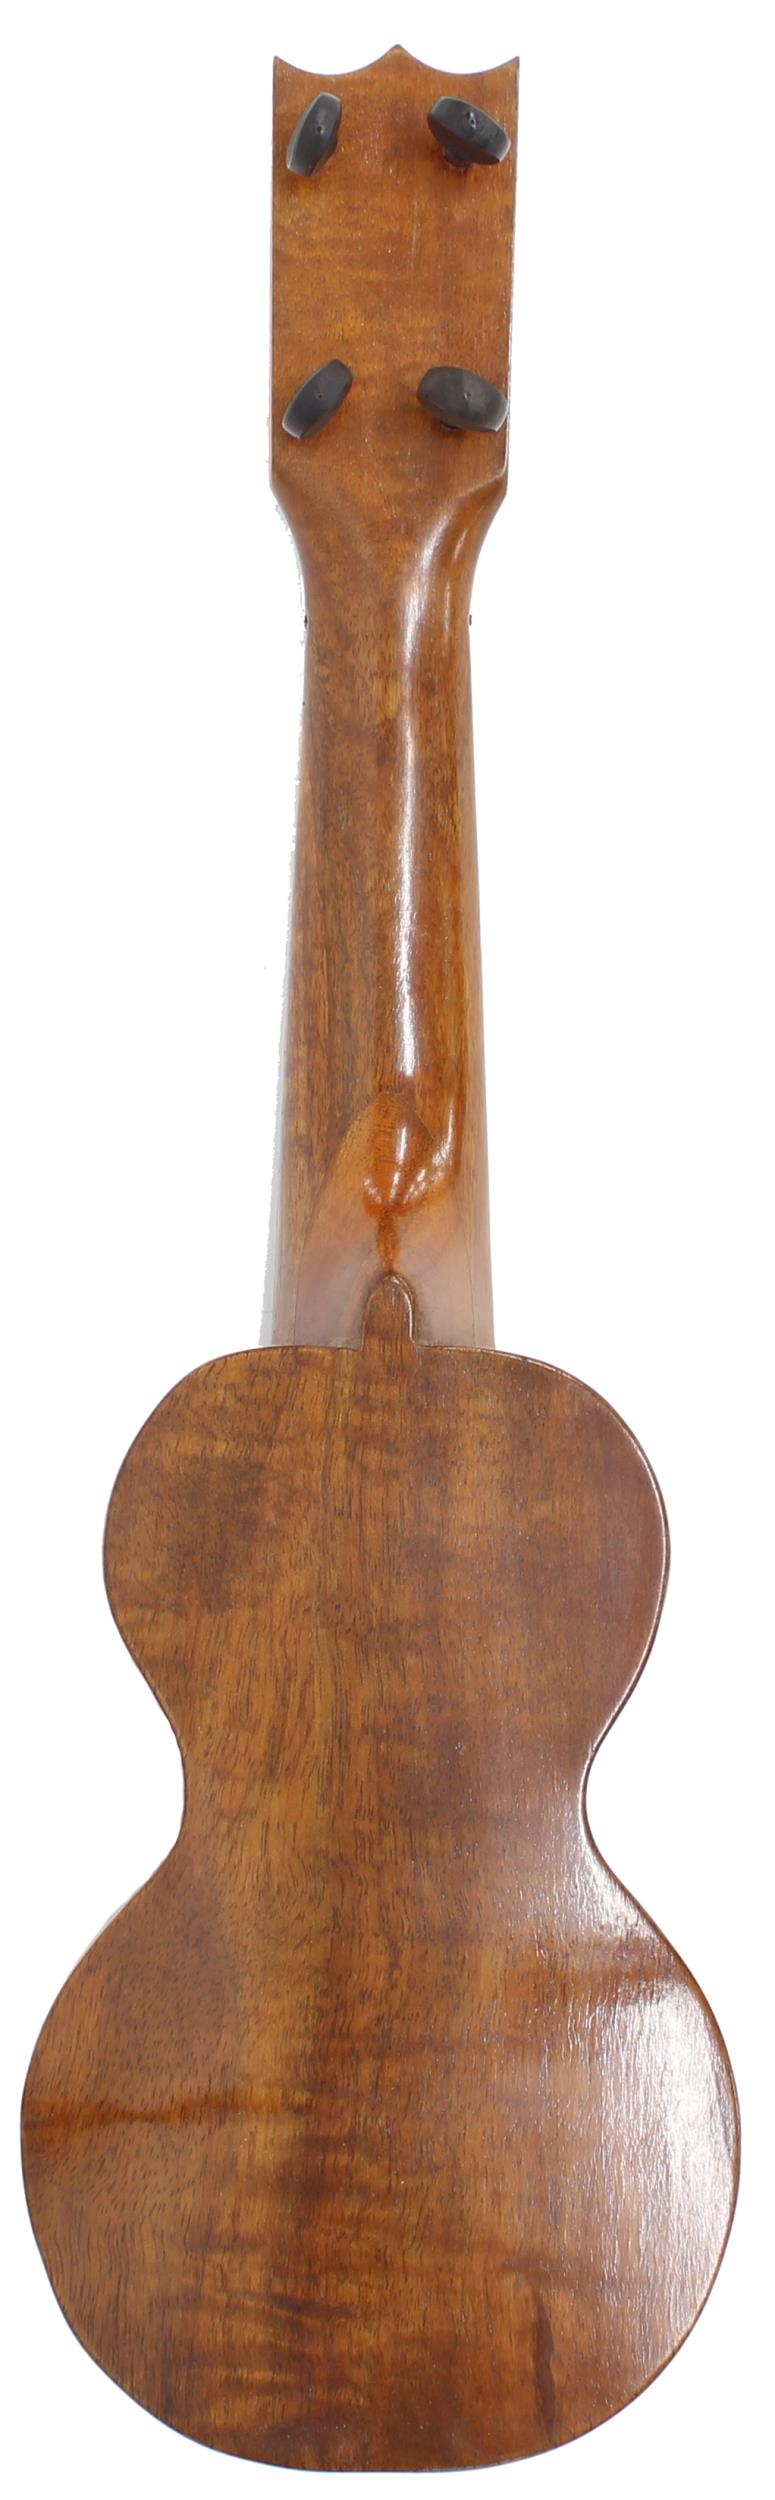 Kumalae ukulele with herringbone banded table and sound hole, bearing the maker's trademark brand to - Image 2 of 2